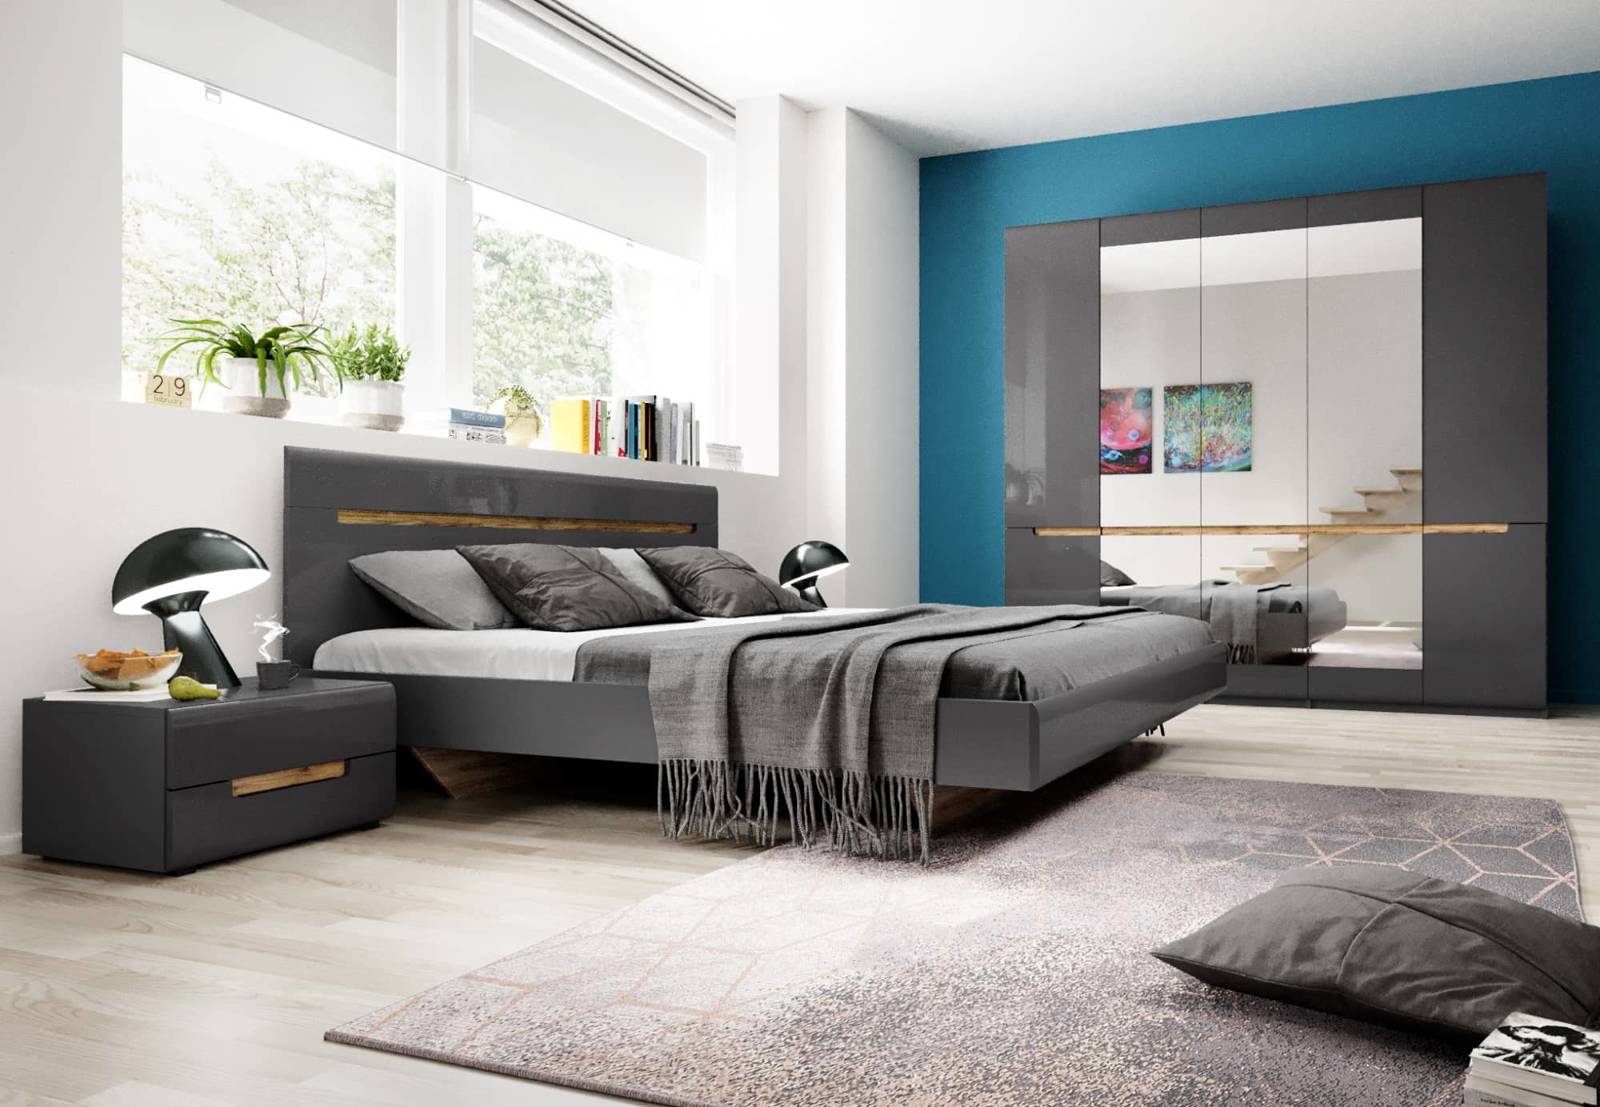 Schlafzimmermöbel-Set Hektor anthrazit / anthrazit glänzend modernes Design  und sichere Elemente aus gehärtetem Glas | Unsere Möbel für alle -  24unseremoebel